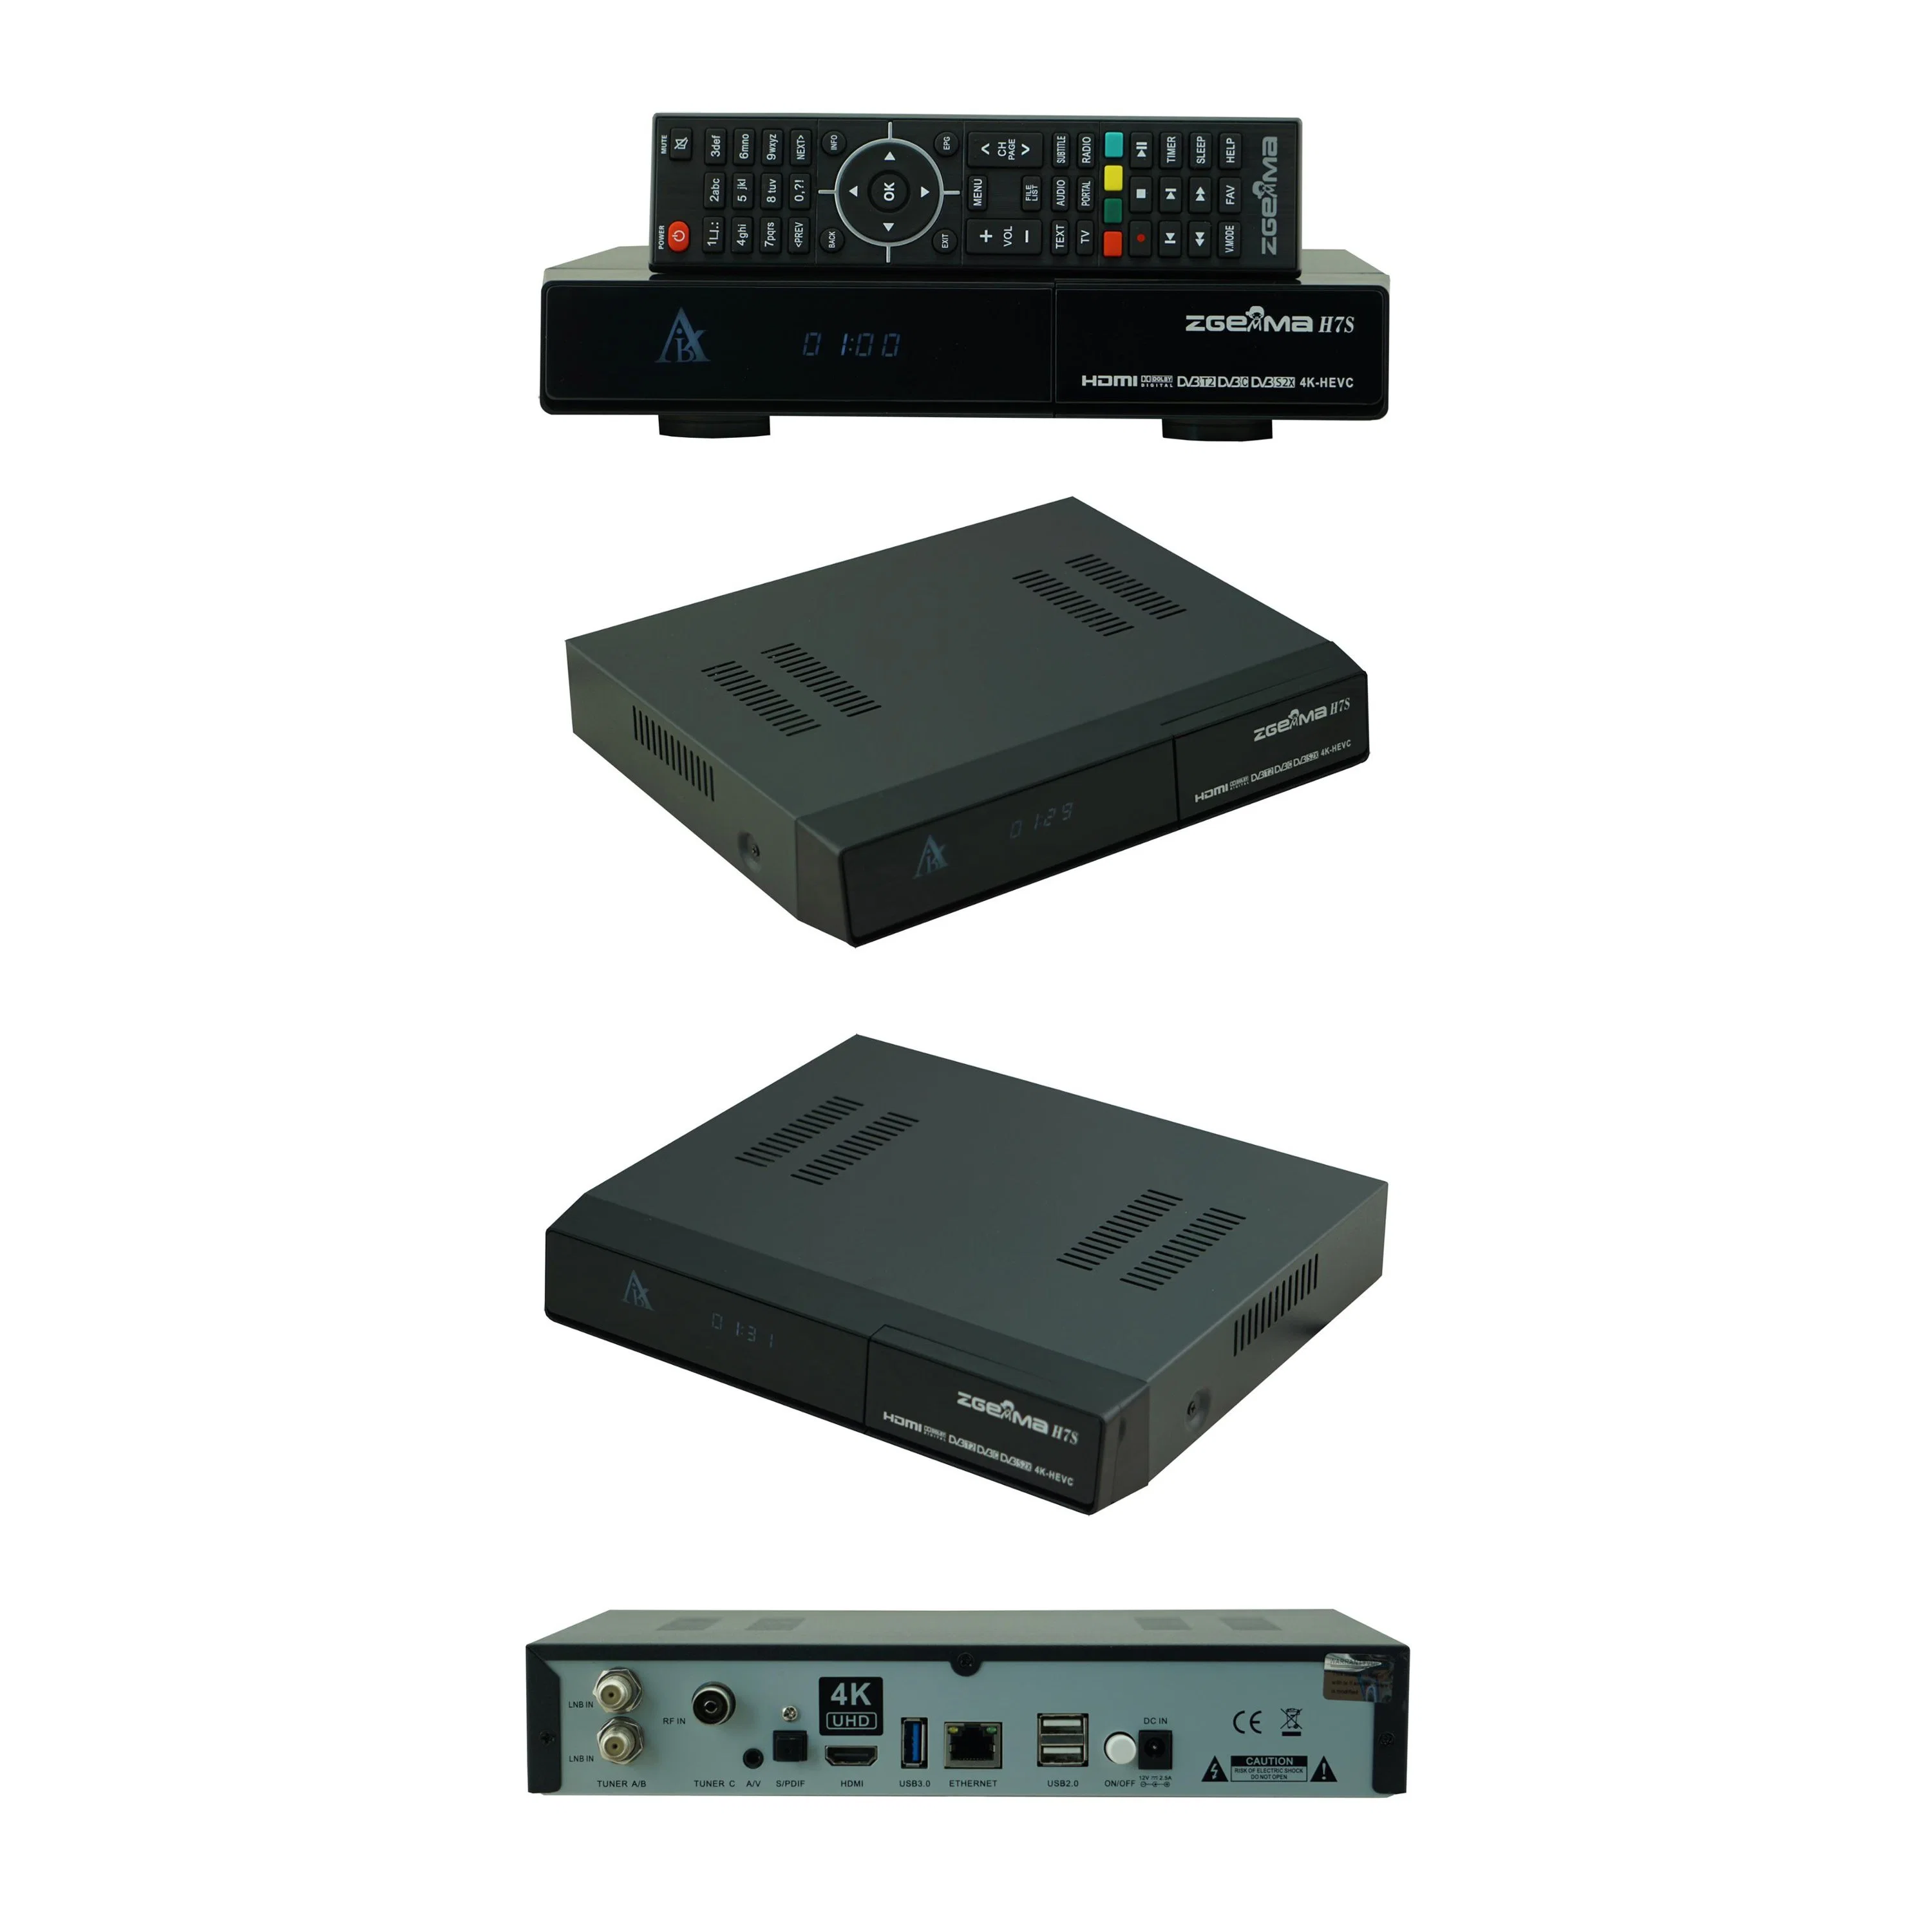 Mejora tu entretenimiento en la televisión con Zgemma H7S - 16GB eMMC Flash, 1GB DDR3 memoria receptor de TV por satélite